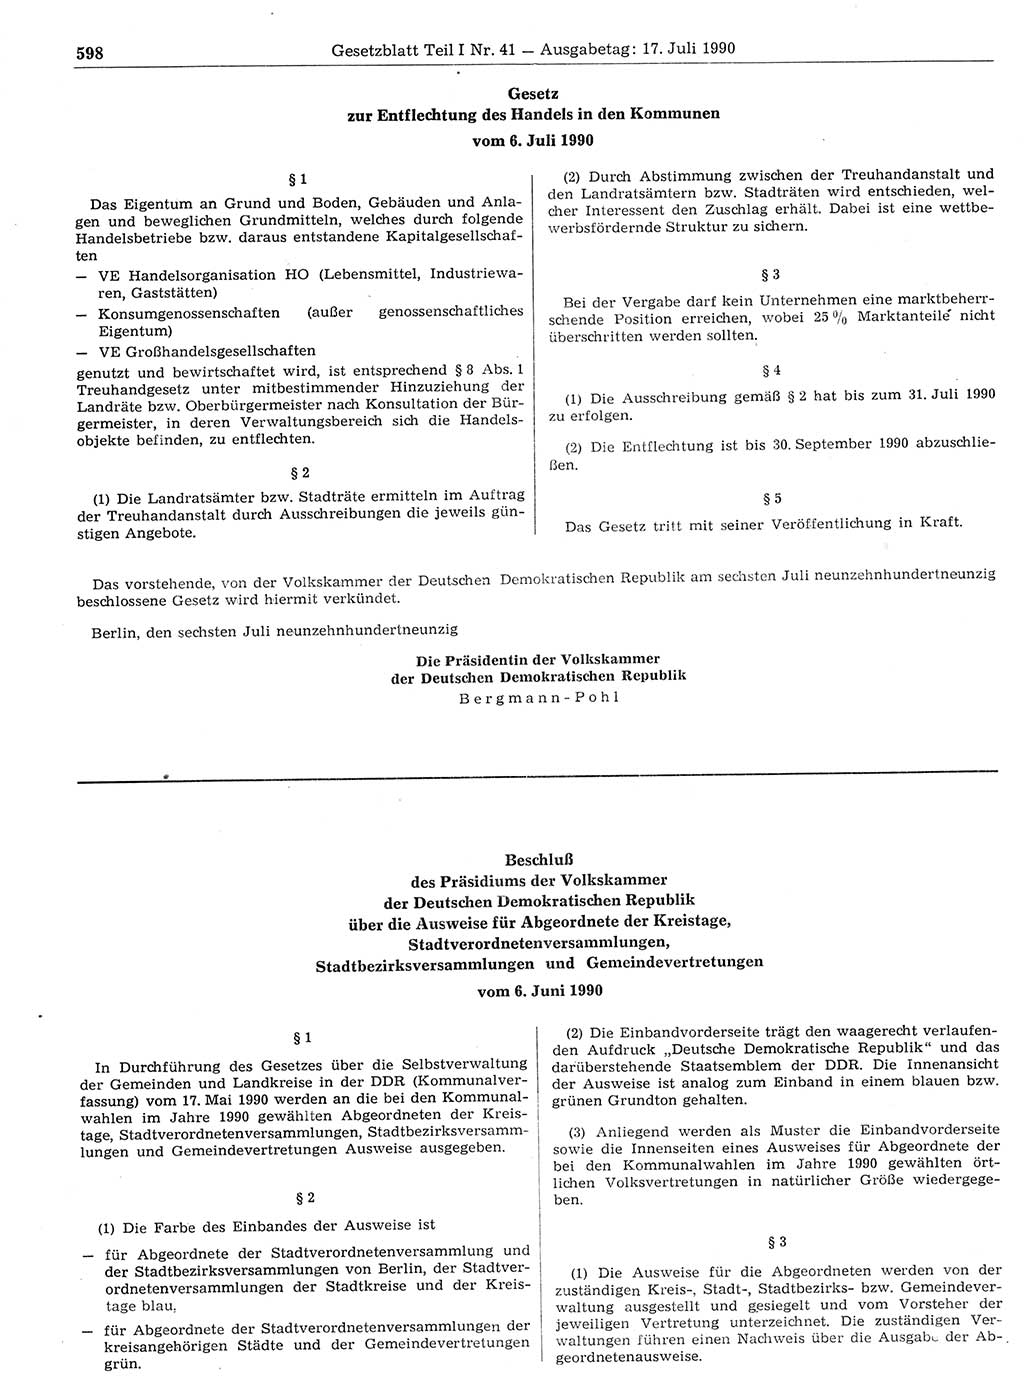 Gesetzblatt (GBl.) der Deutschen Demokratischen Republik (DDR) Teil Ⅰ 1990, Seite 598 (GBl. DDR Ⅰ 1990, S. 598)